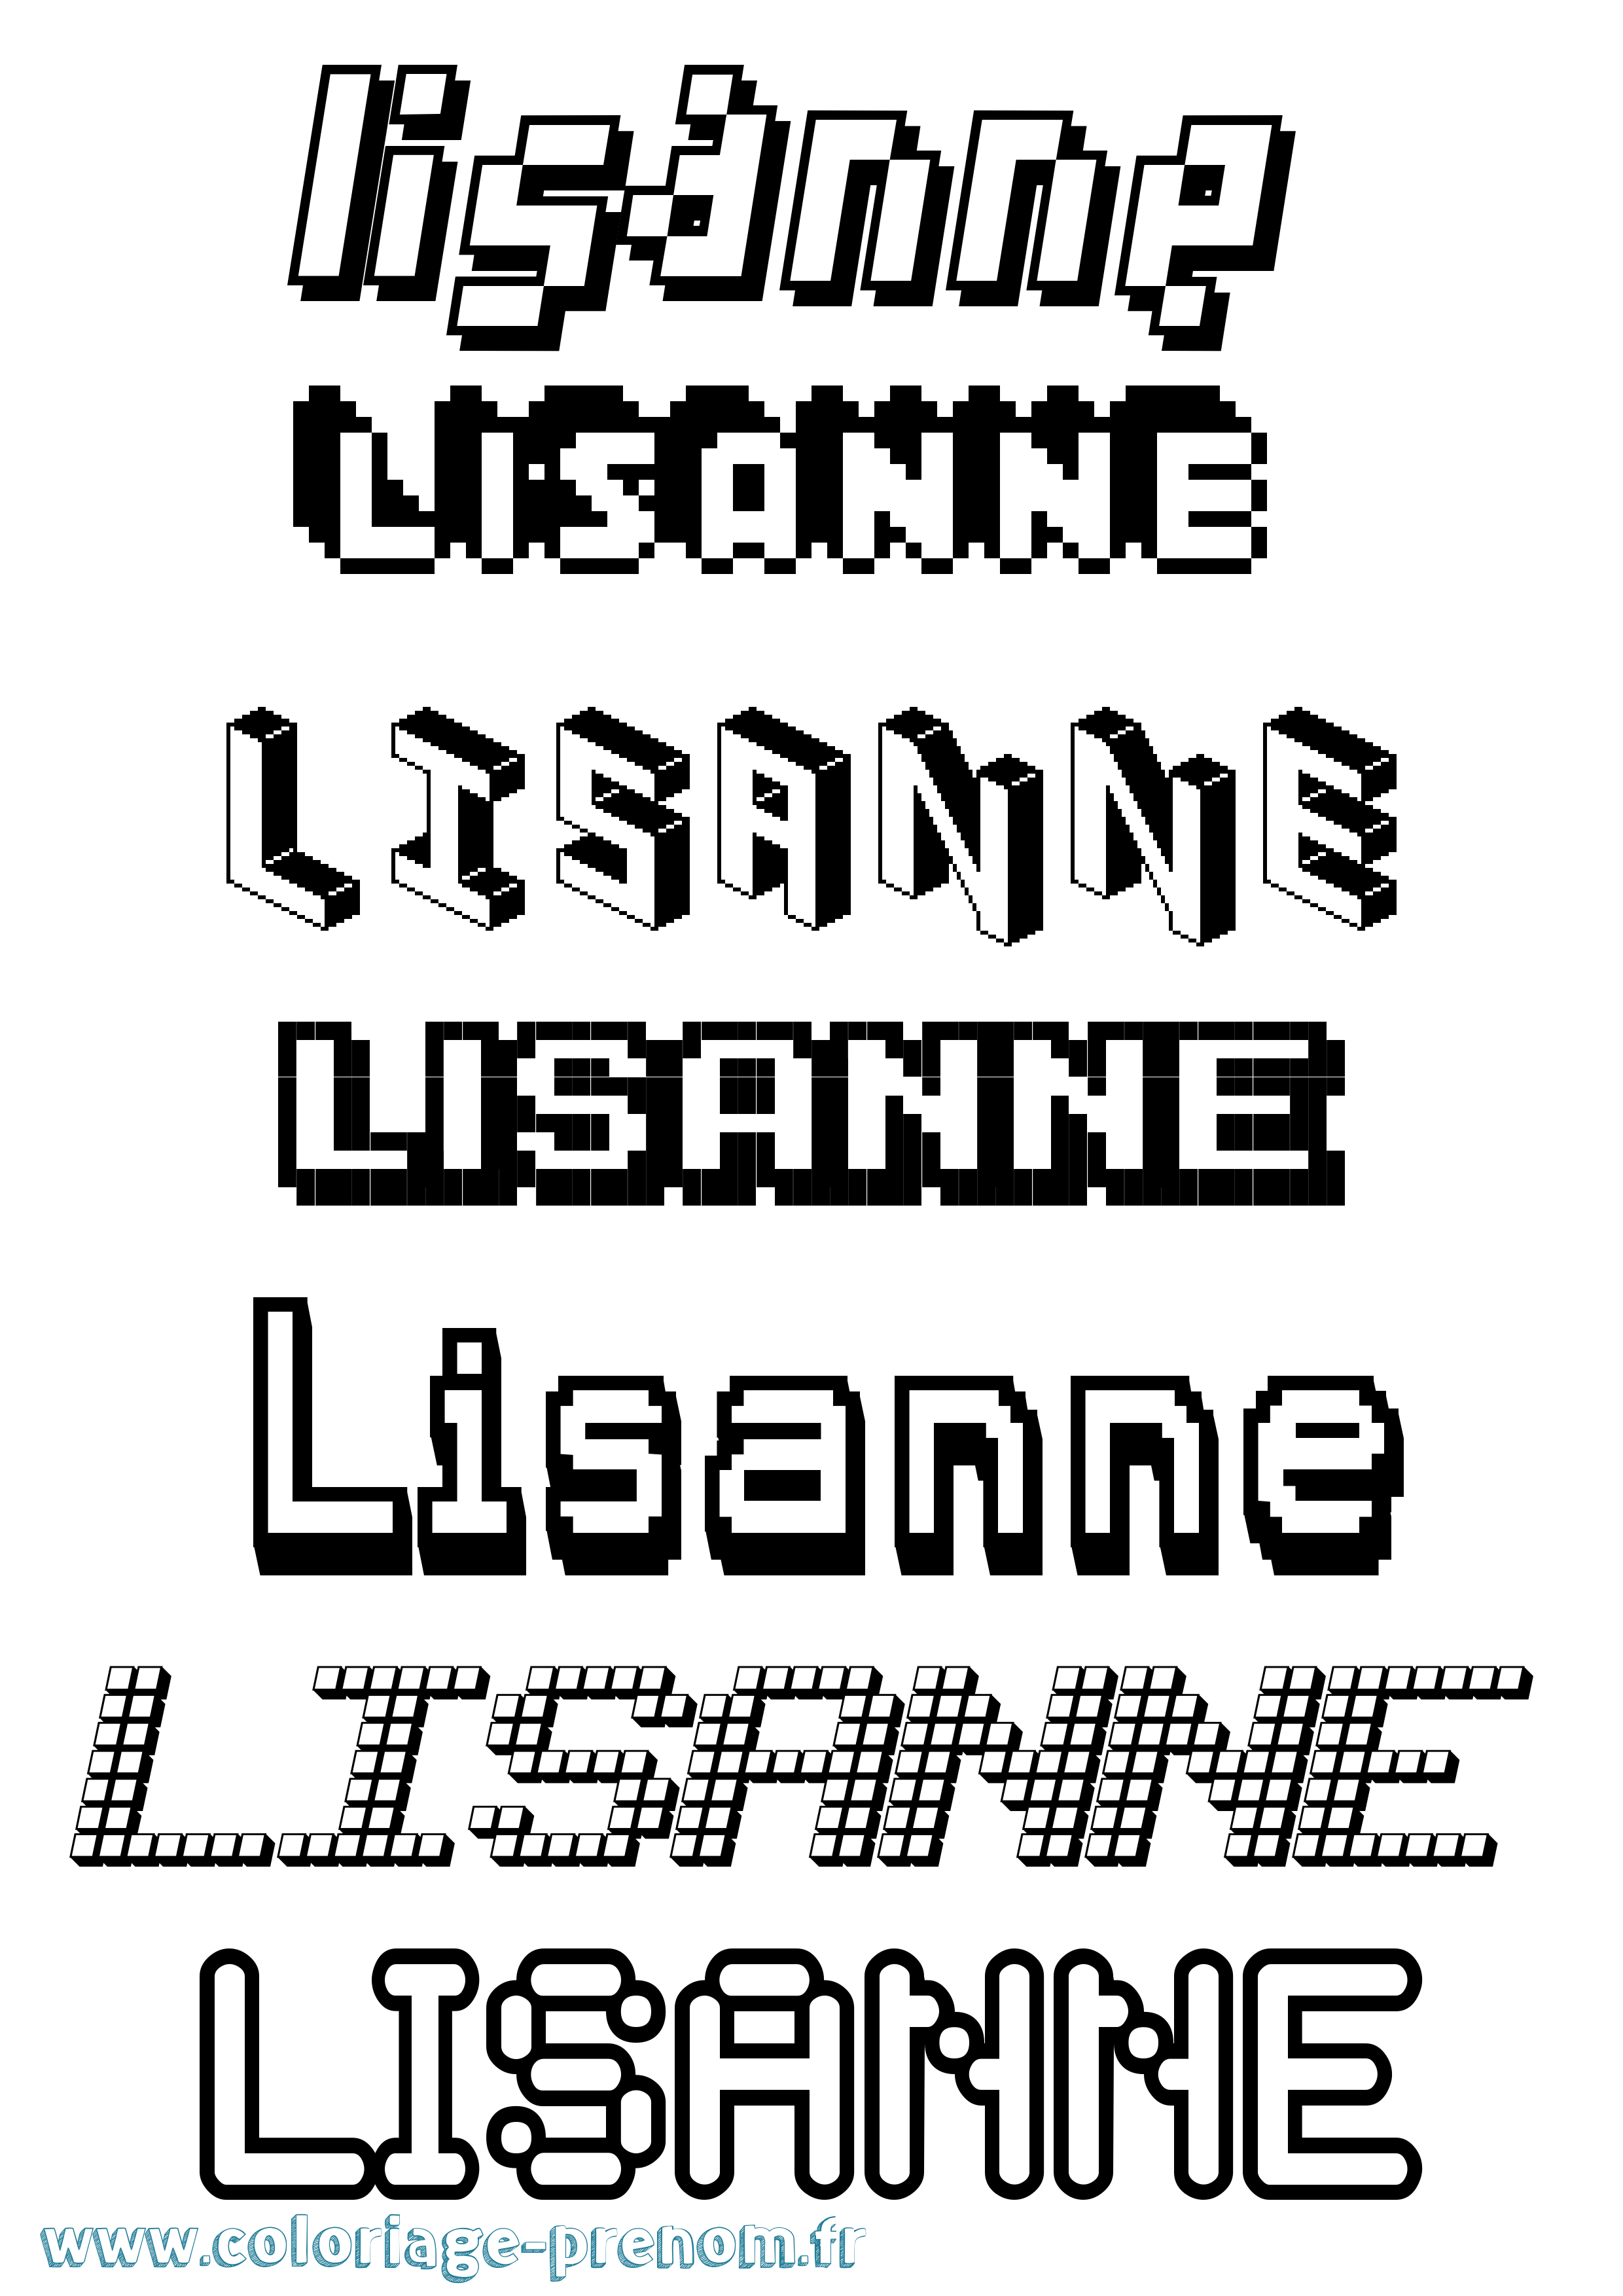 Coloriage prénom Lisanne Pixel